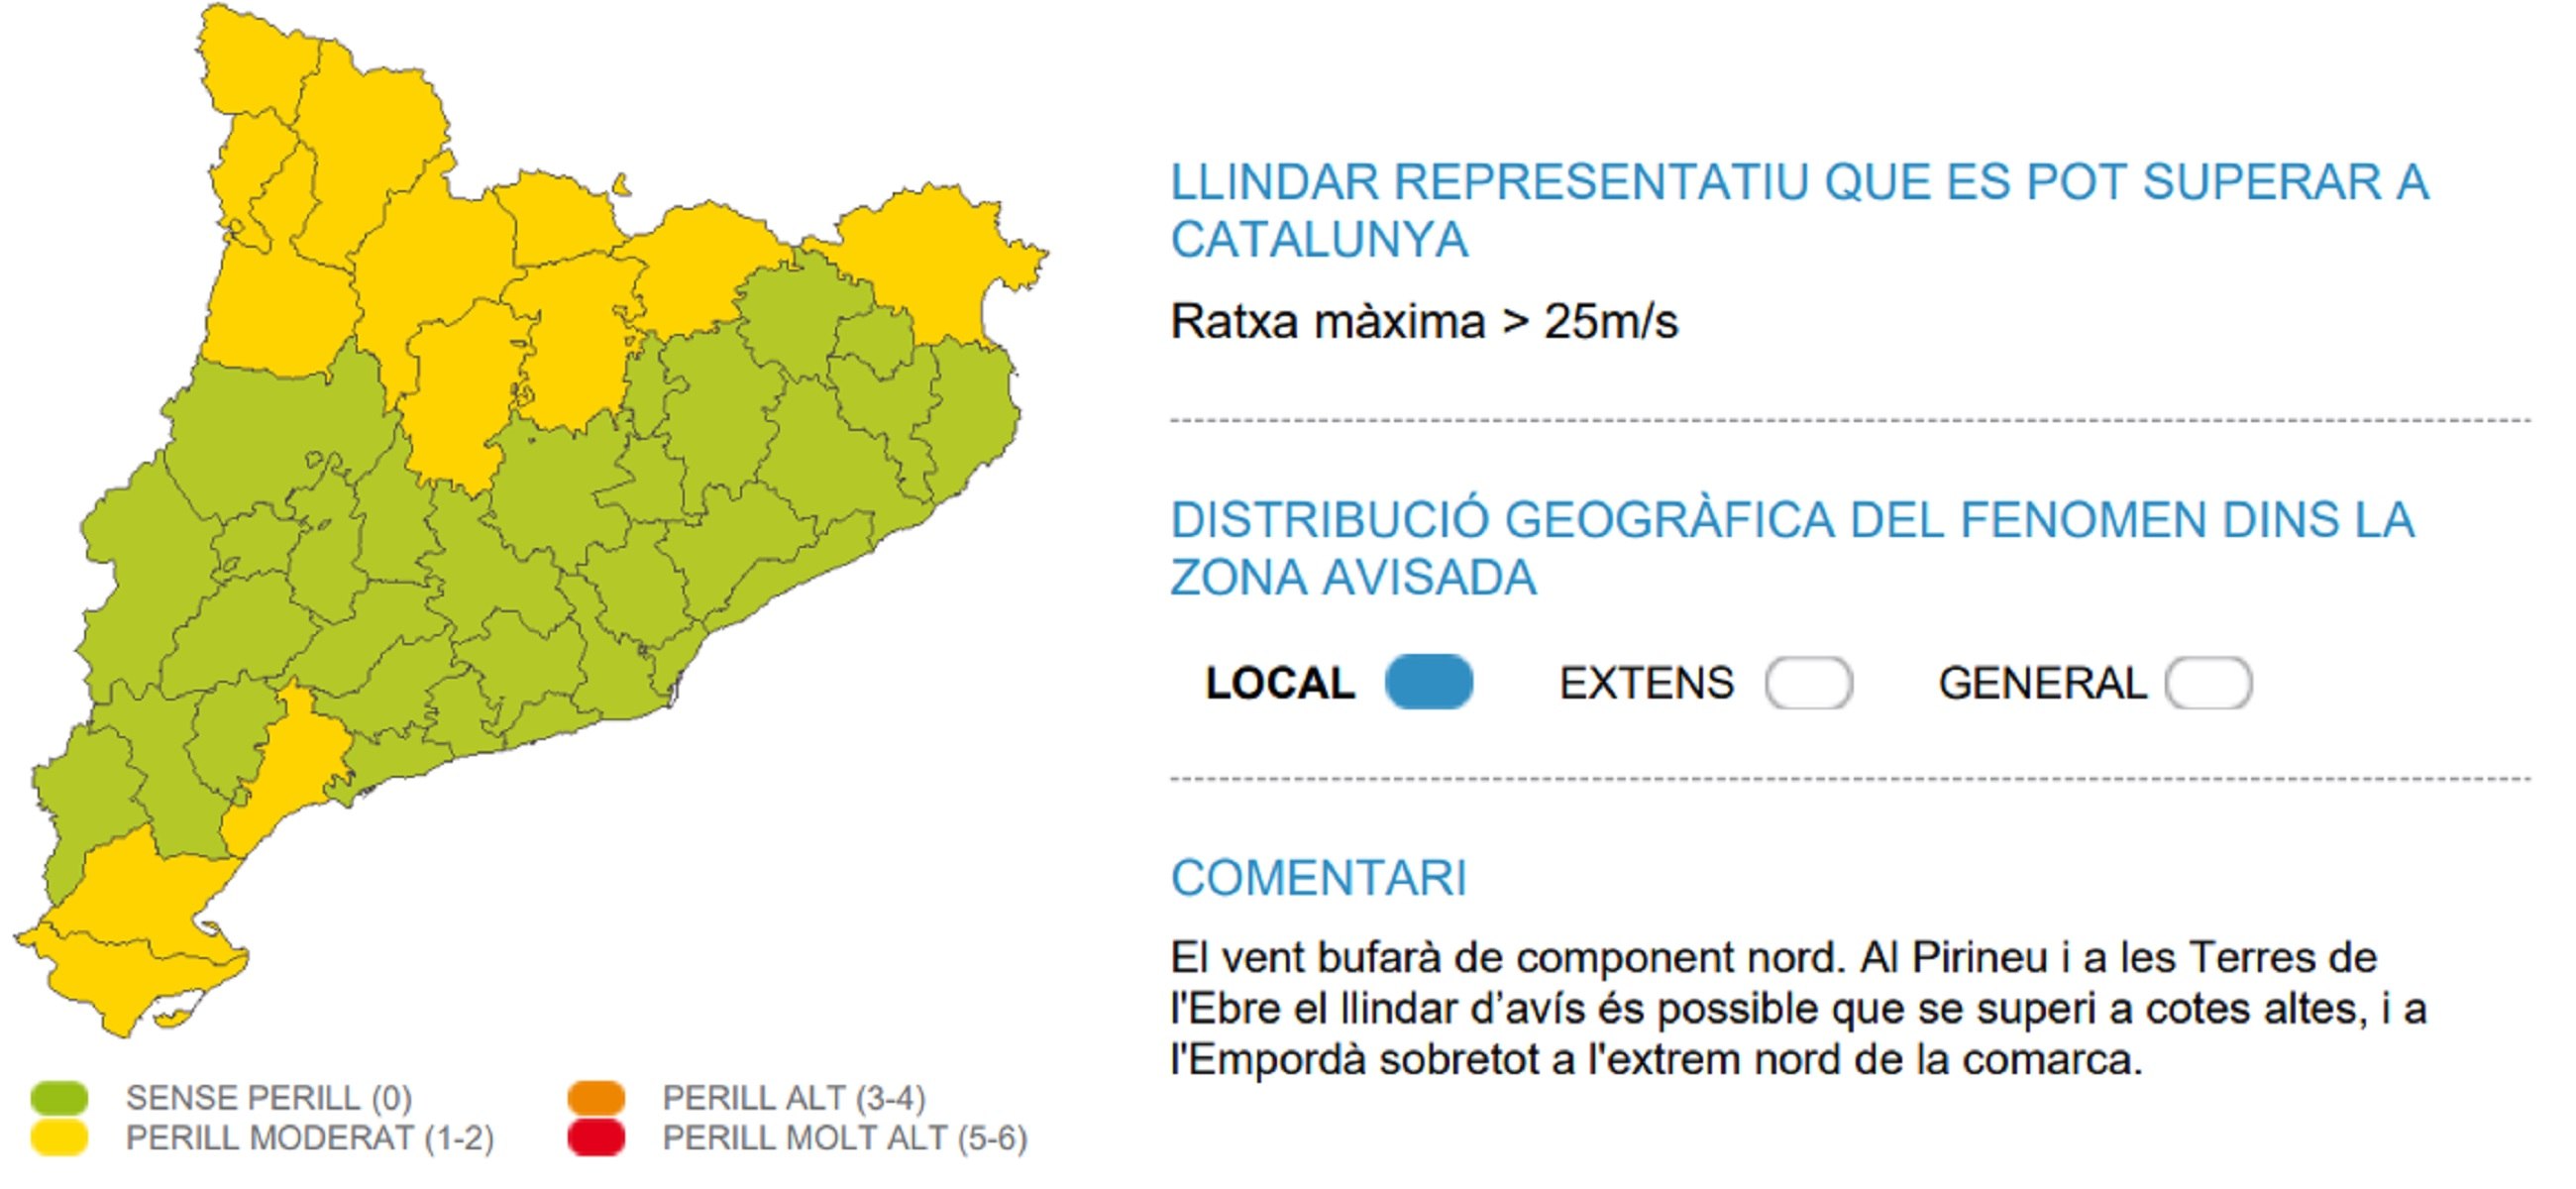 Alerta por|para fuertes ventoleras este jueves en Catalunya / Meteocat